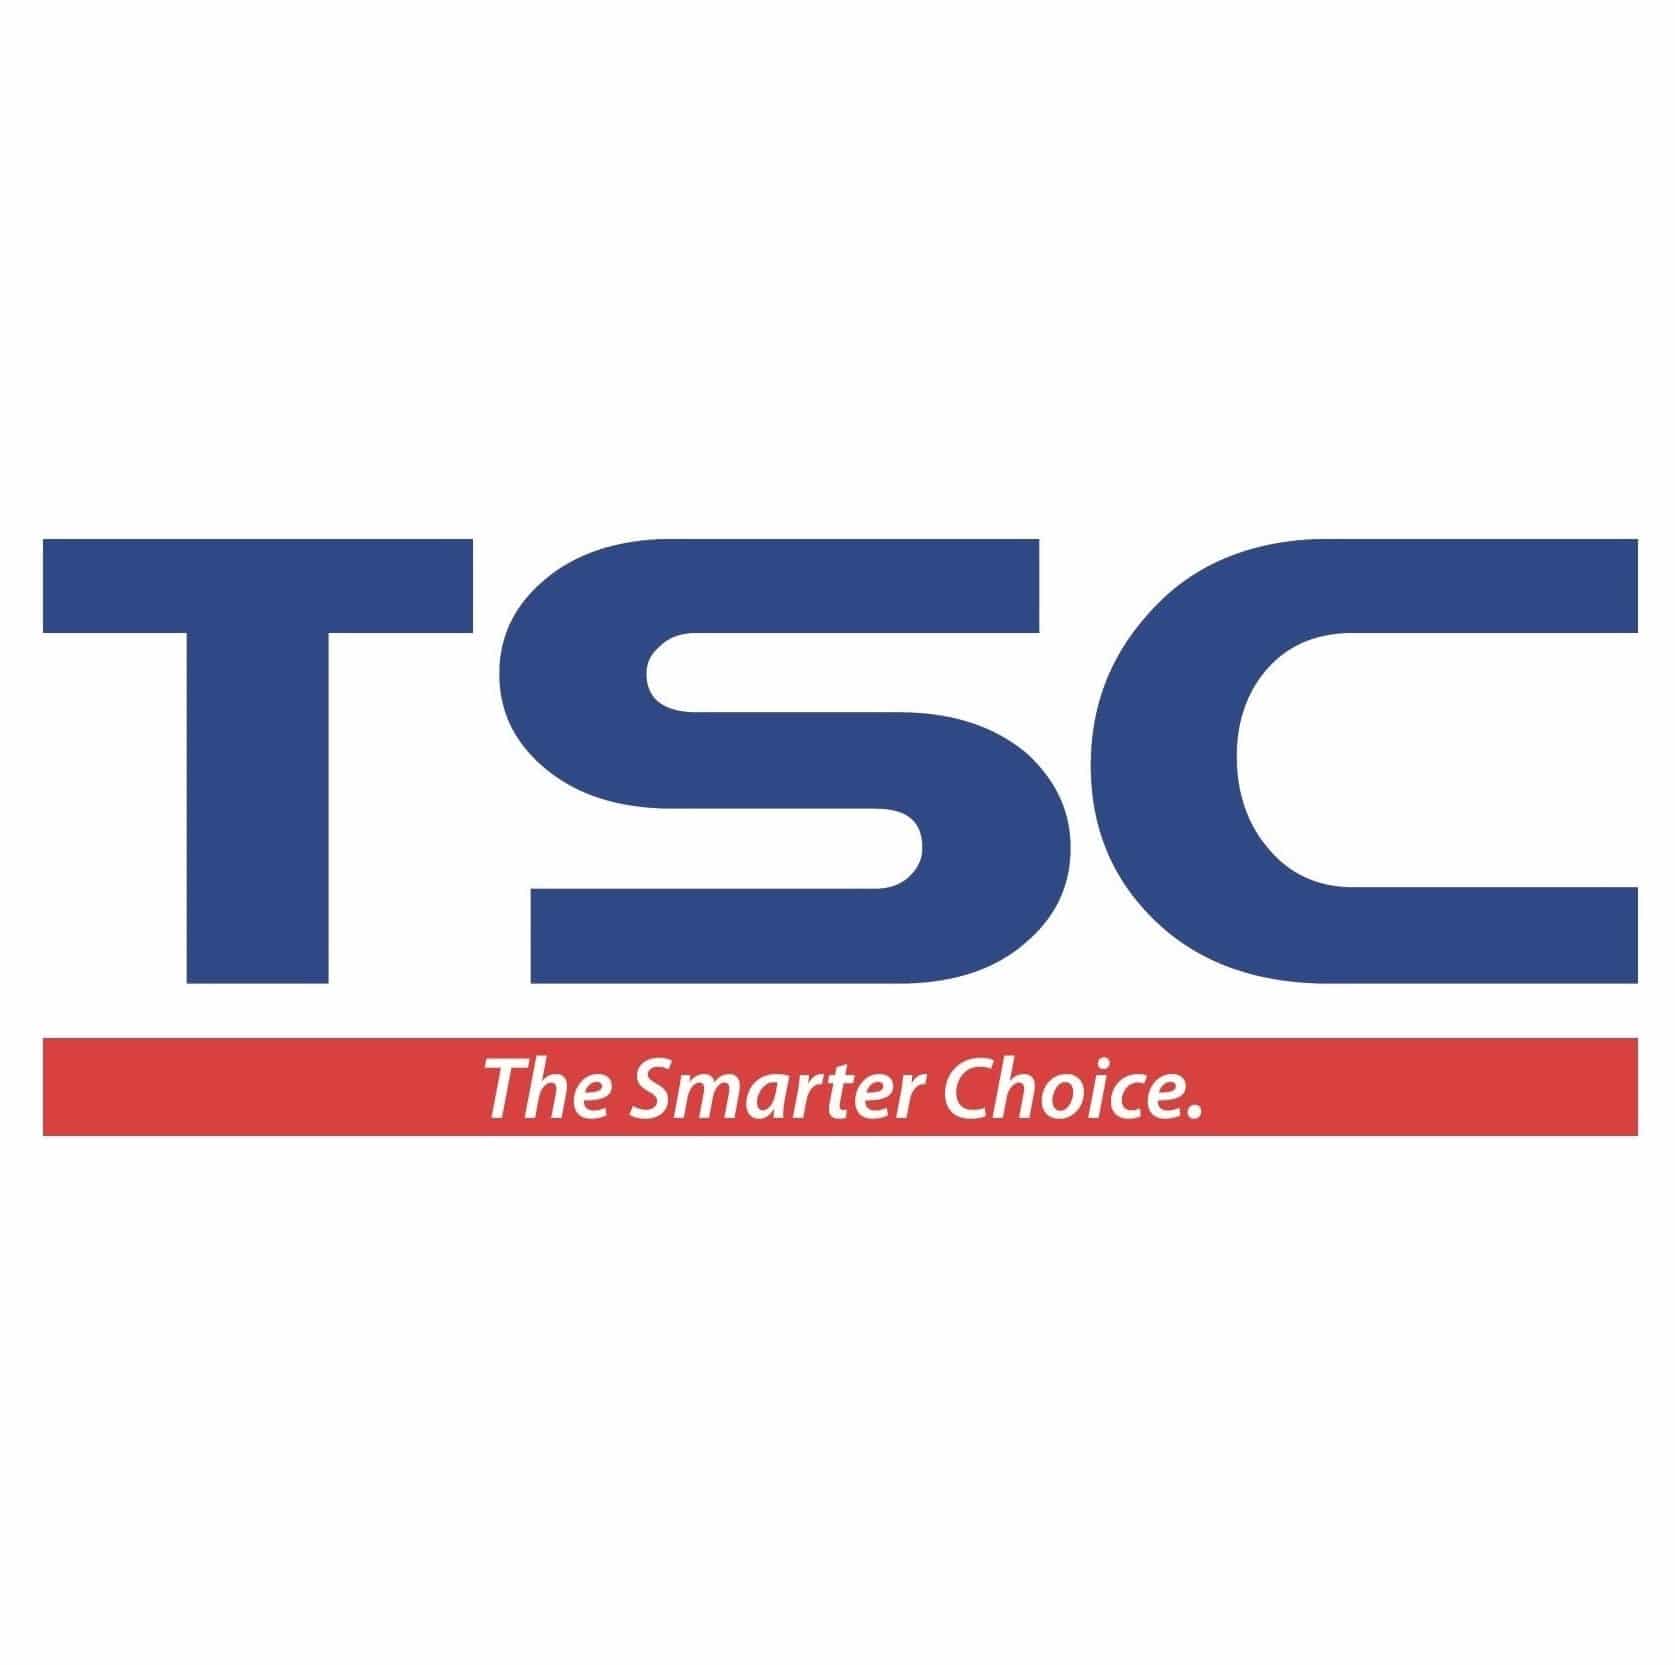 Logo TSC